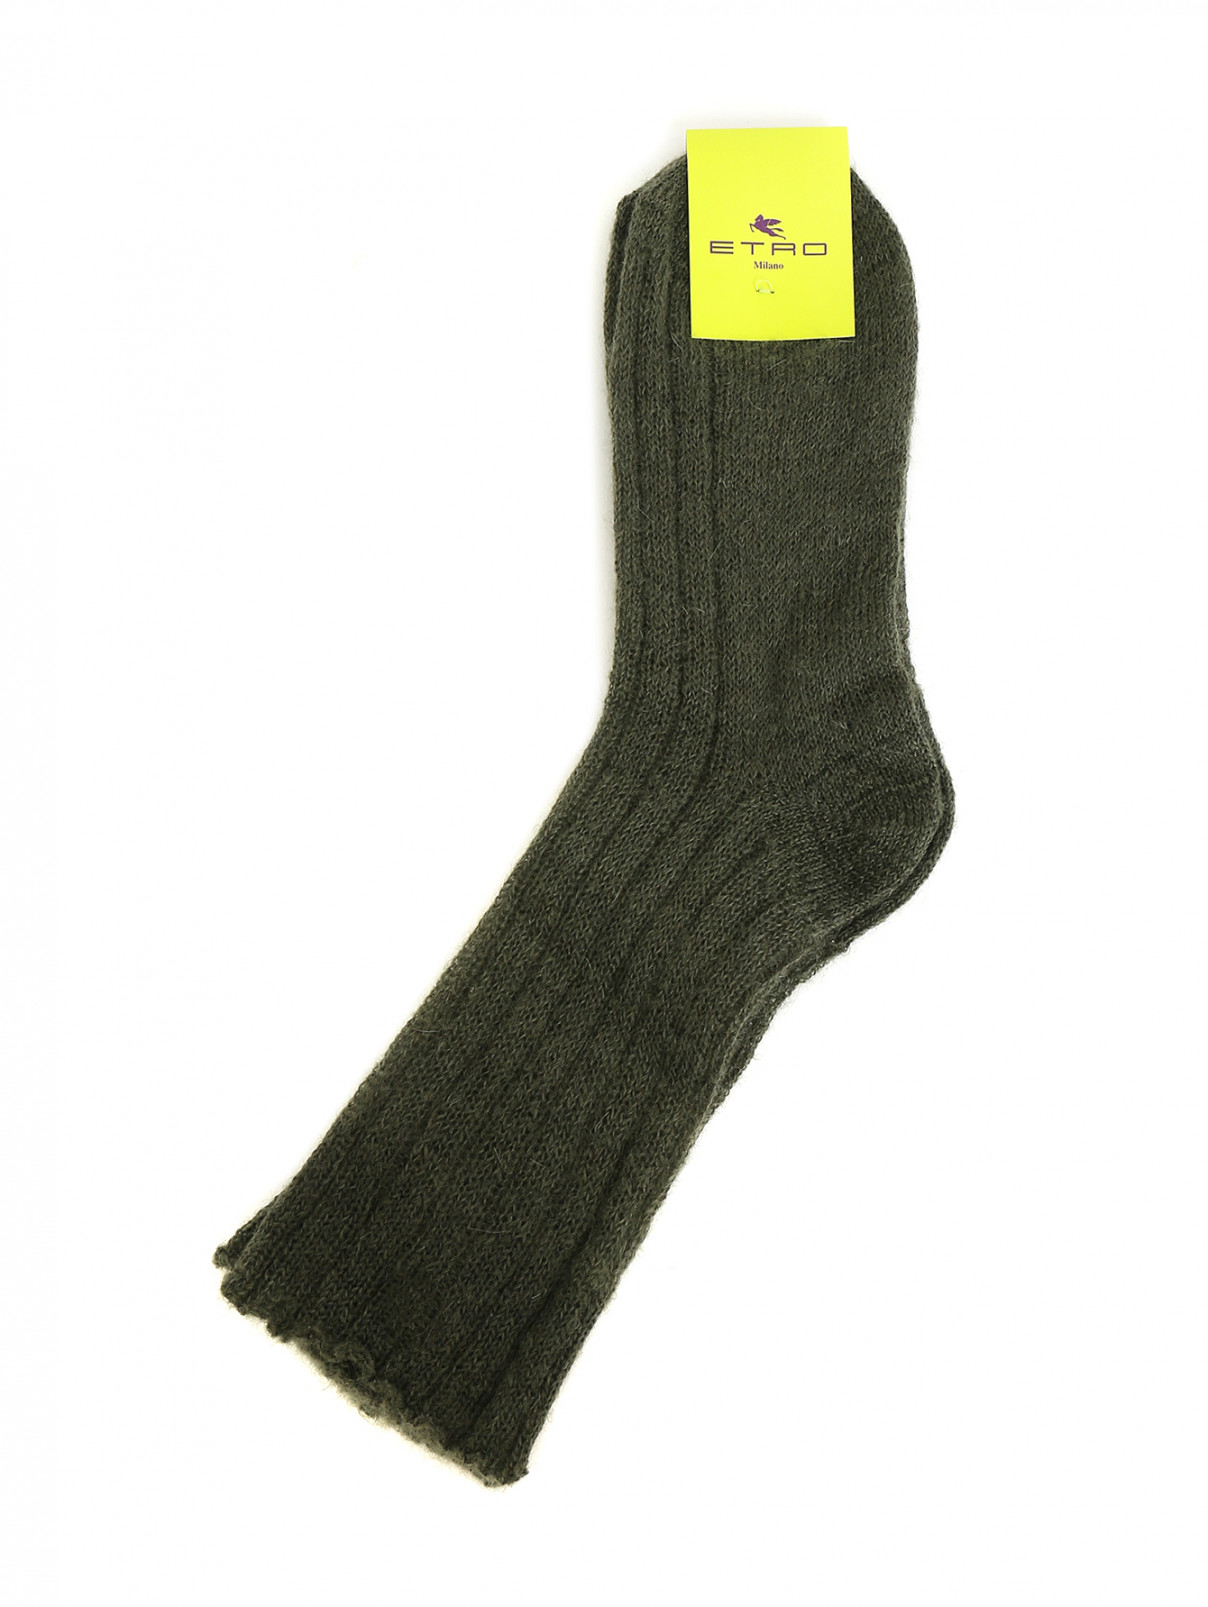 Носки из шерсти Etro  –  Общий вид  – Цвет:  Зеленый